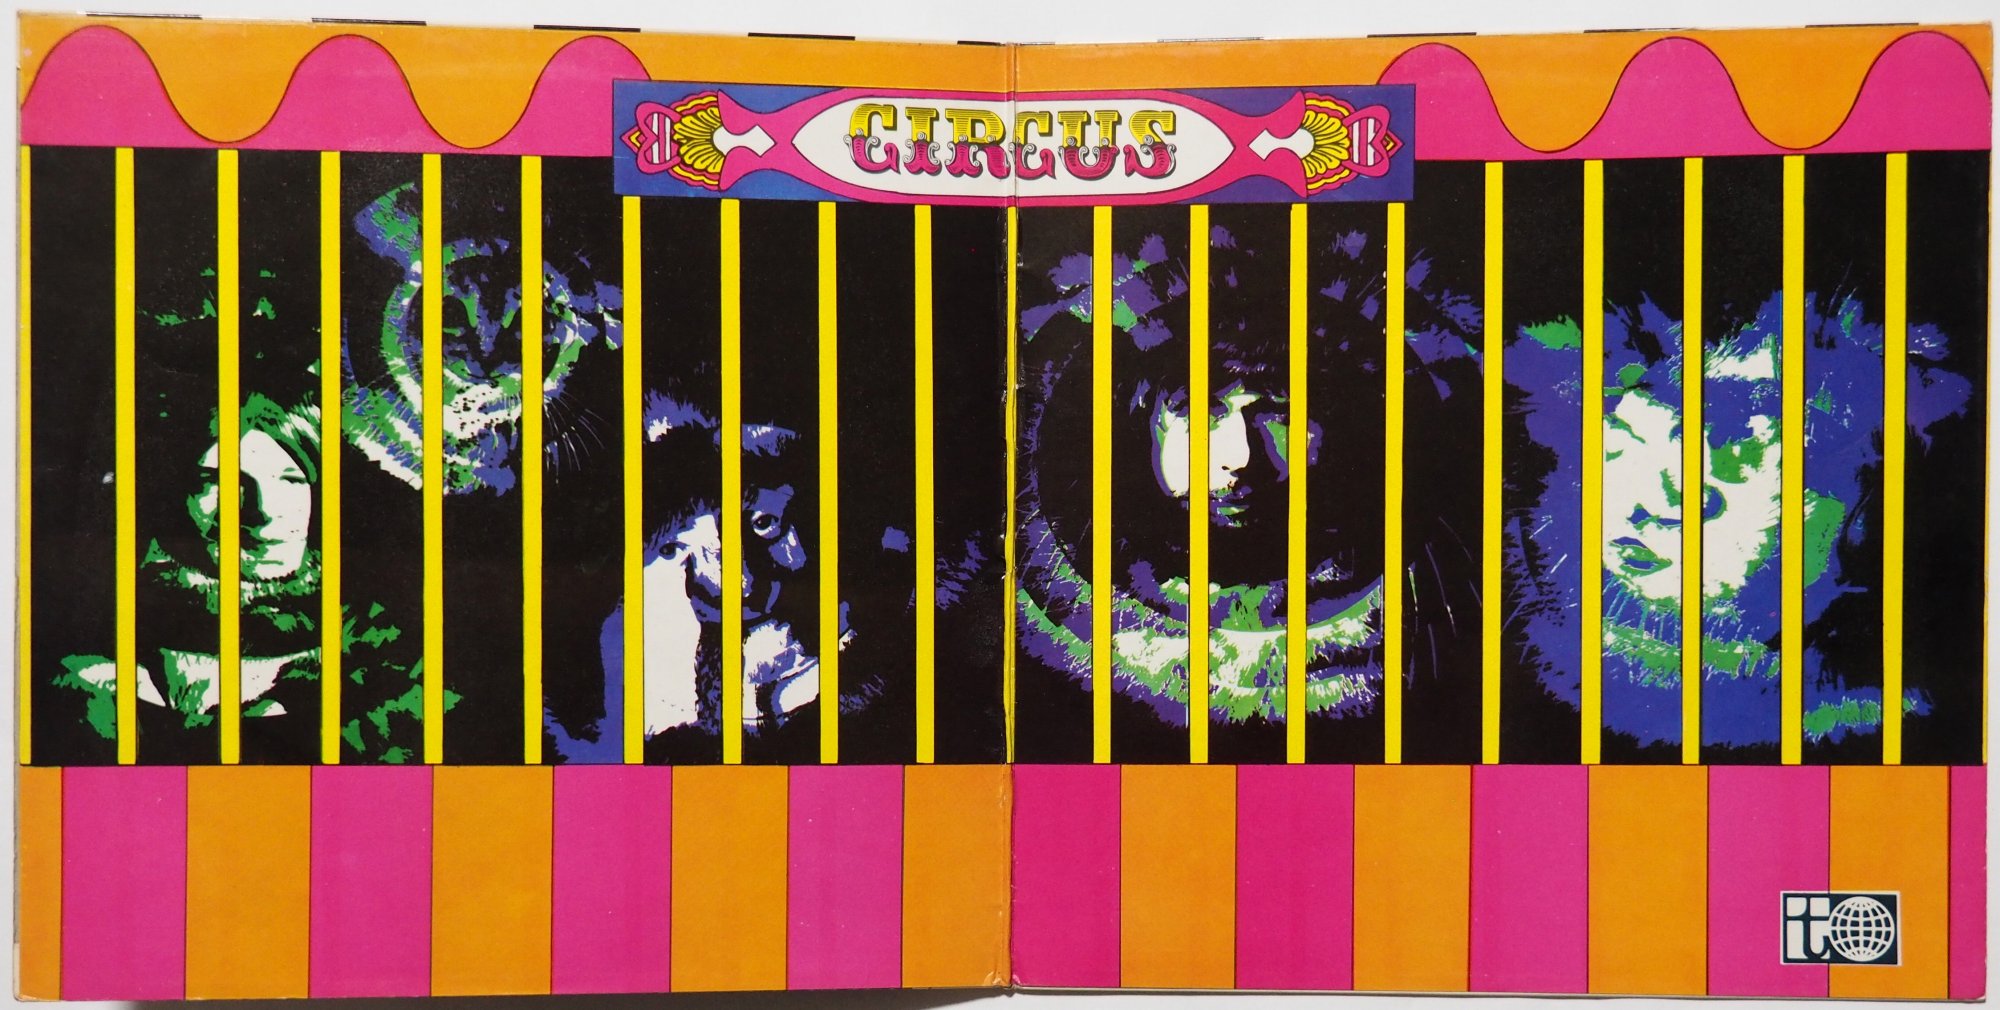 Circus / Circusβ